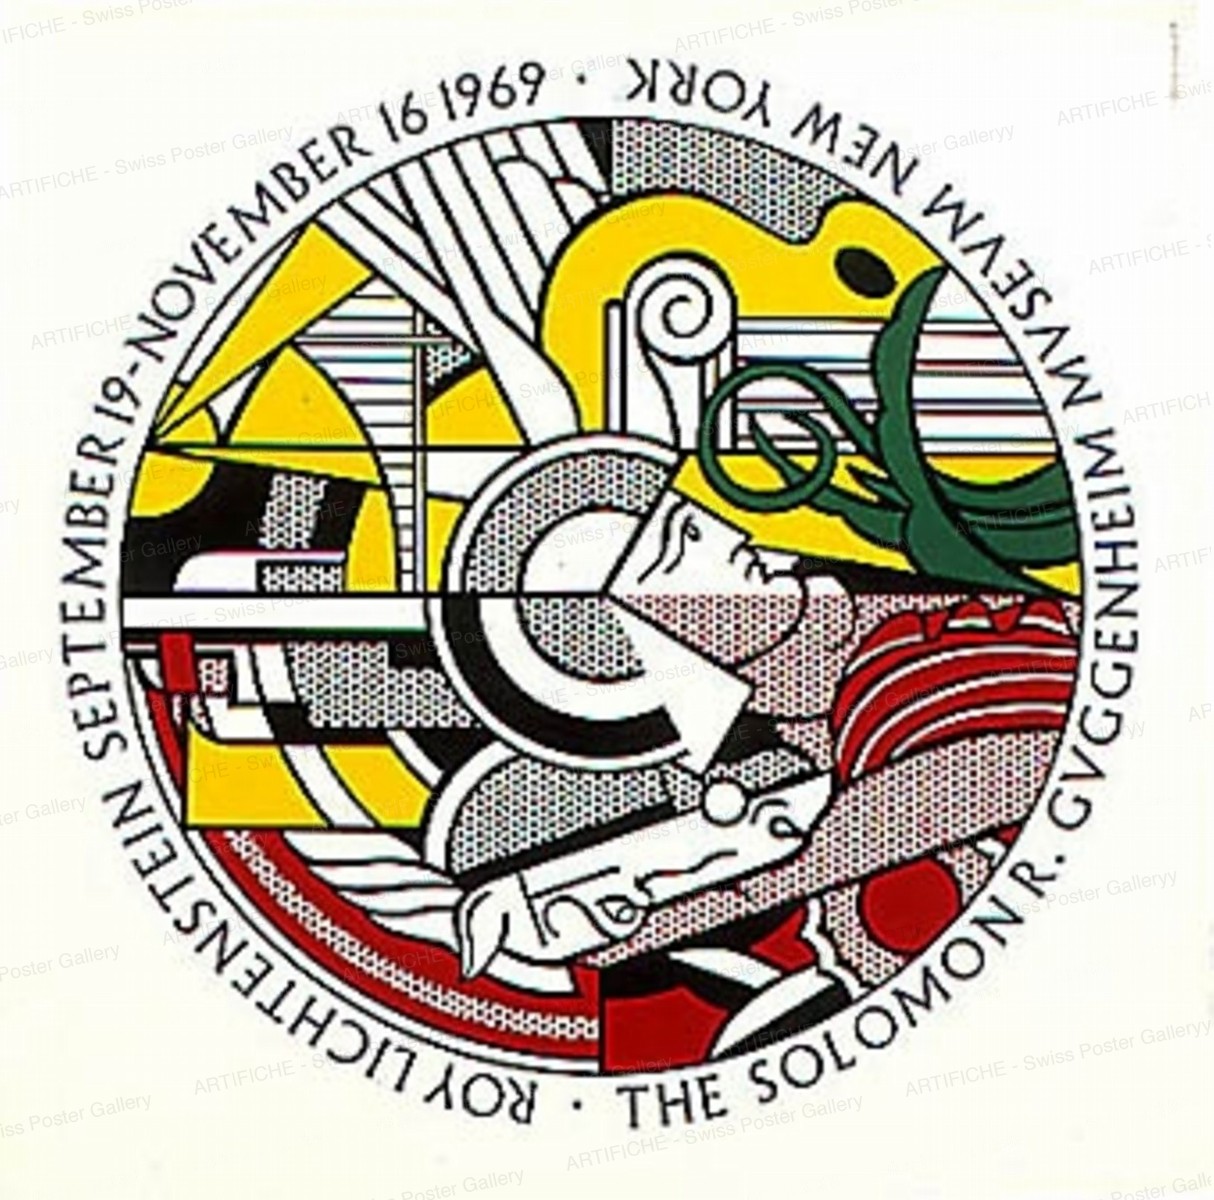 THE SOLOMON R. GUGGENHEIM MUSEUM NEW YORK – September 19 – November 16 1969, Roy Lichtenstein